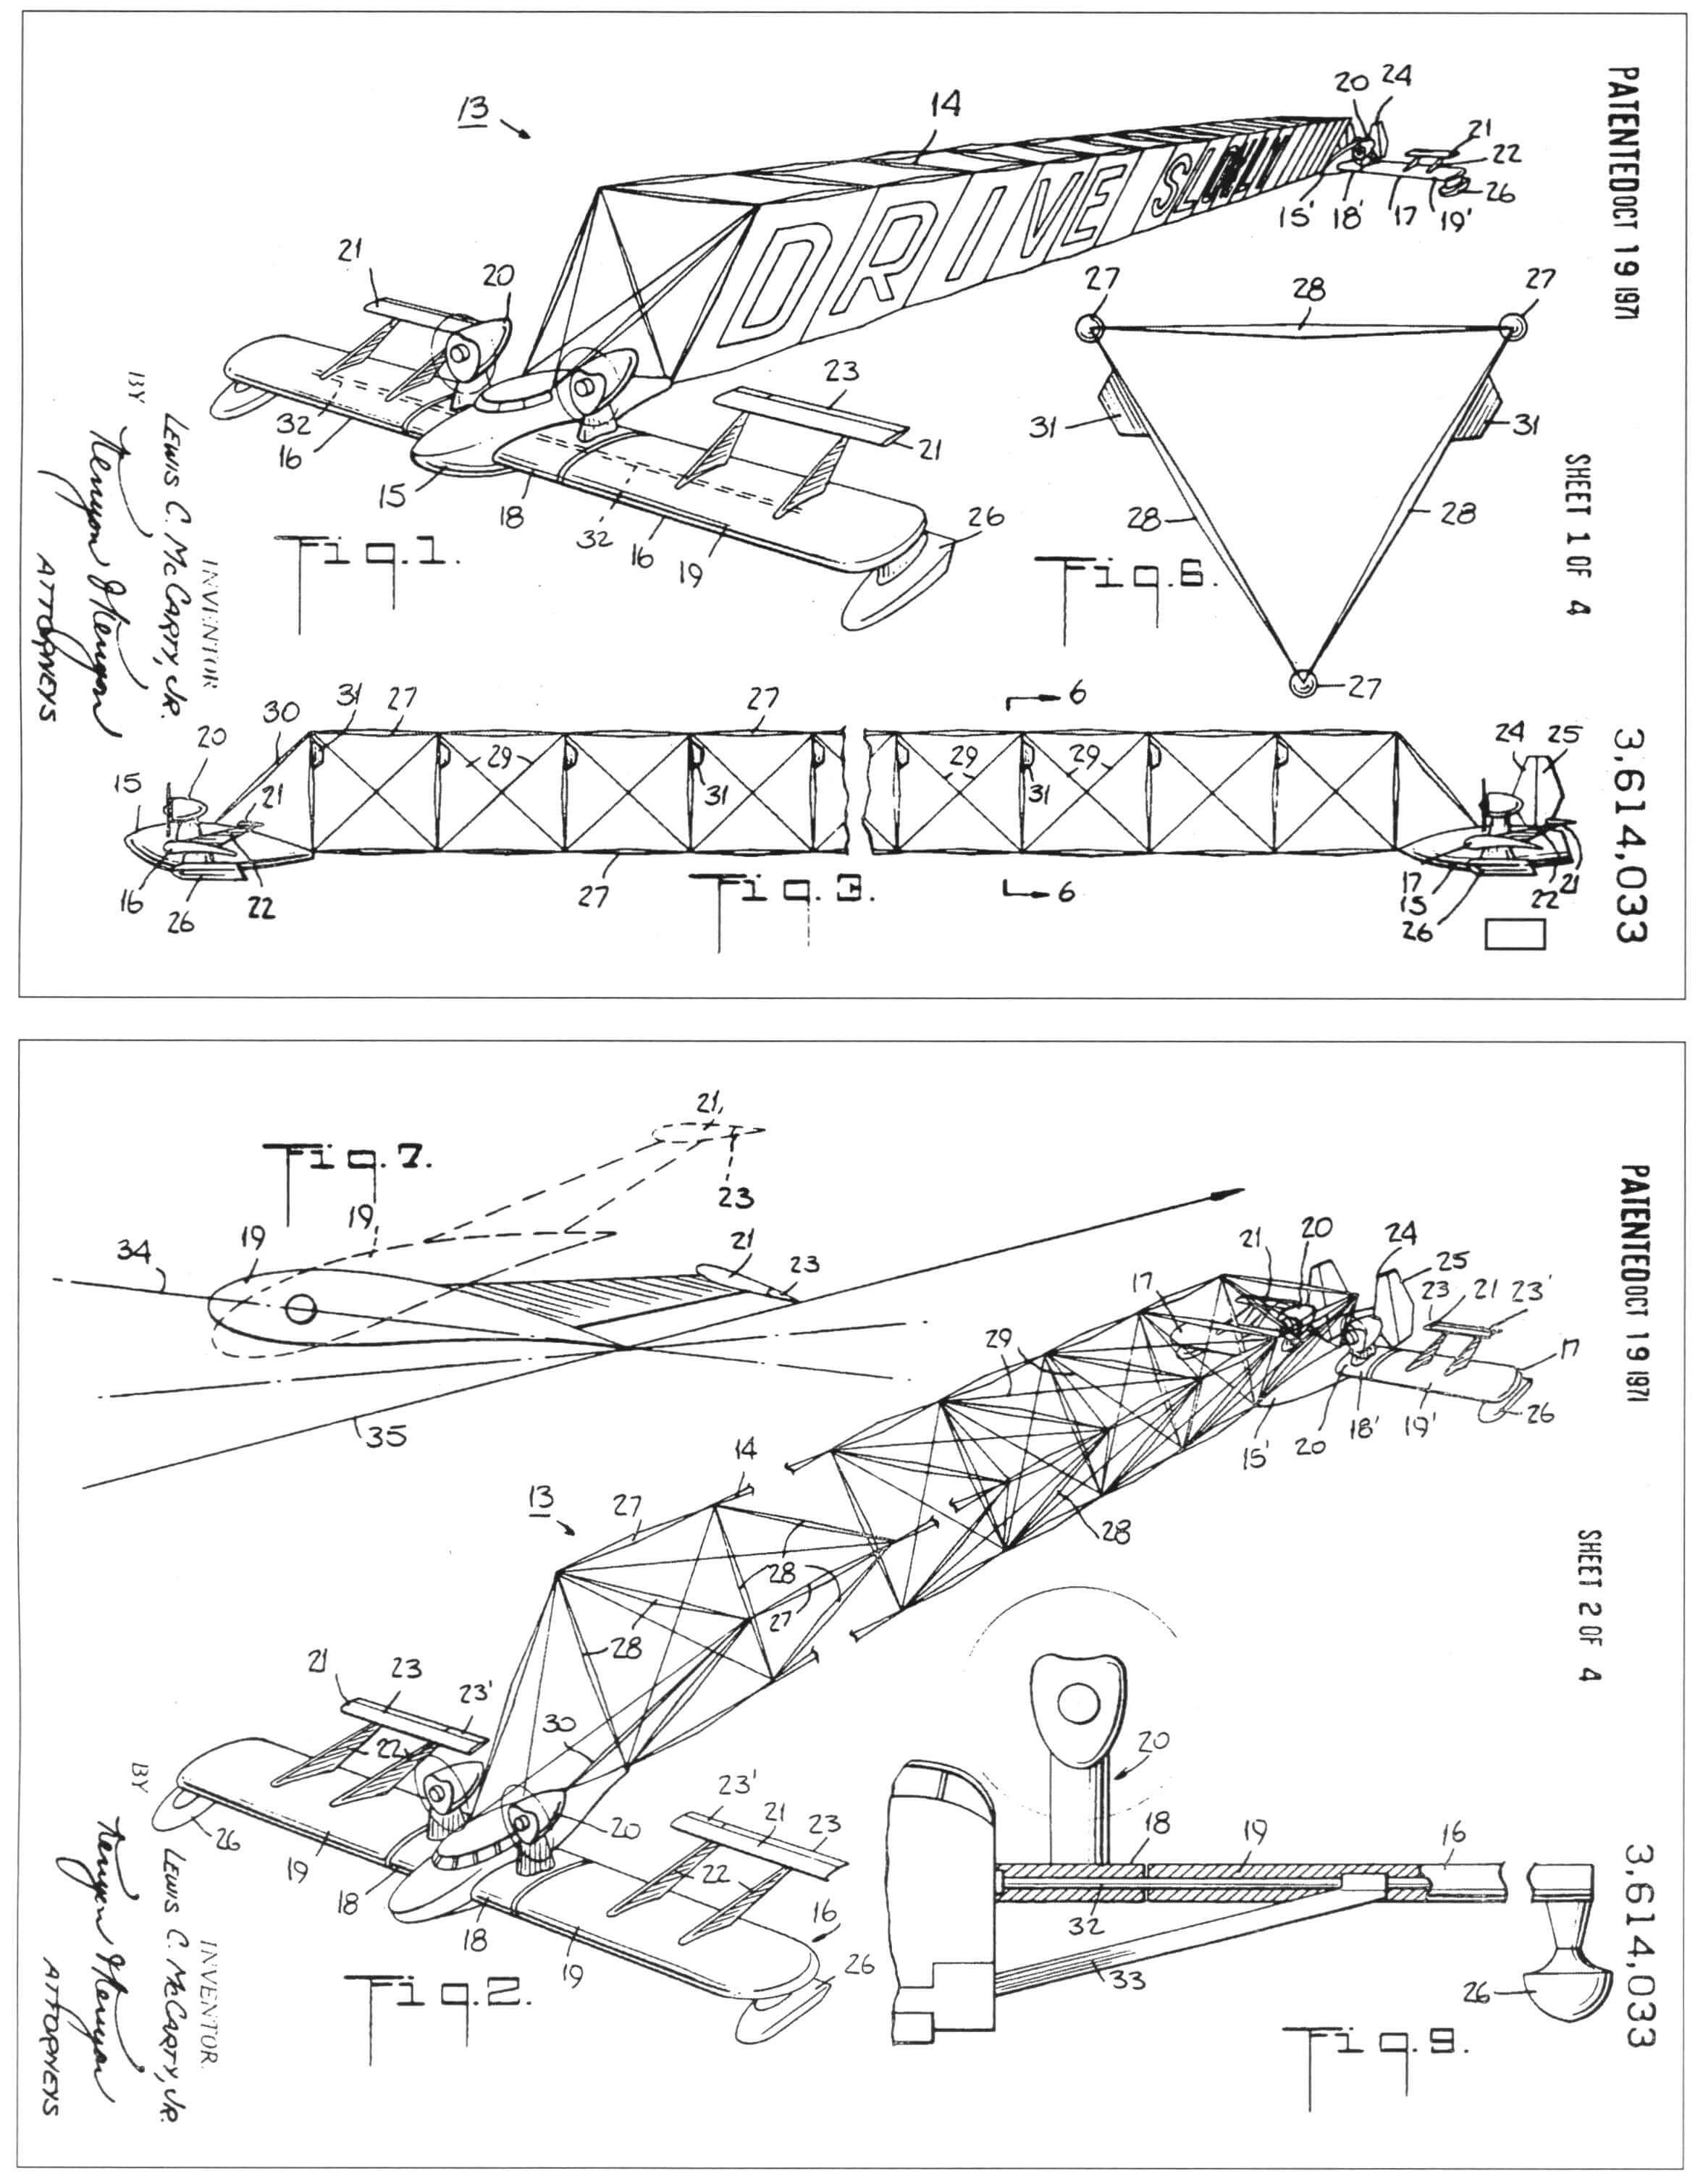 Схемы различных вариантов «V-лайнера» из патентной заявки